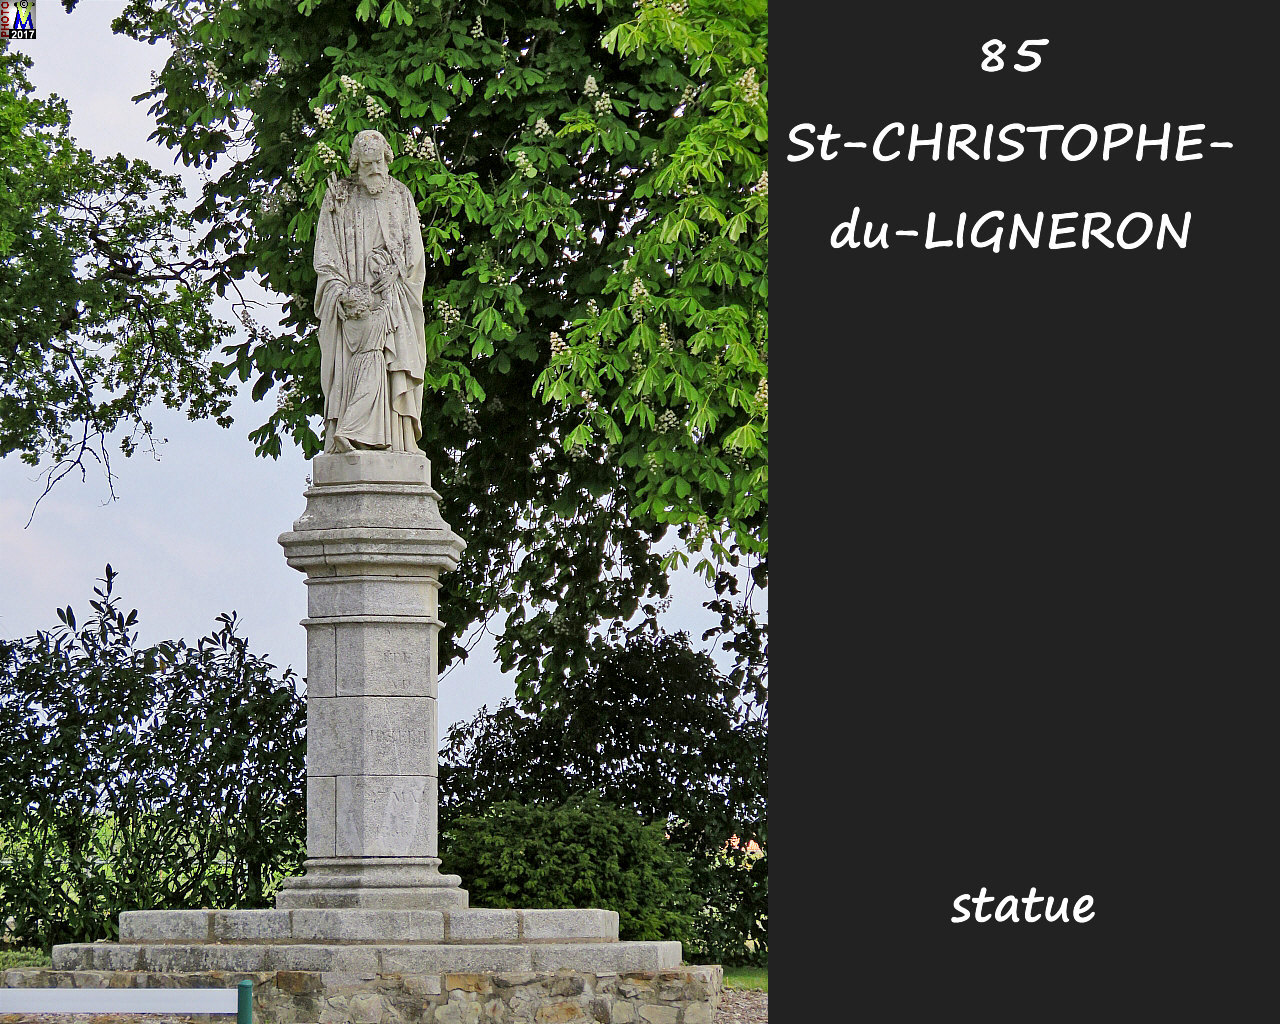 85StCHRISTOPHE-LIGNERON_statue_1002.jpg